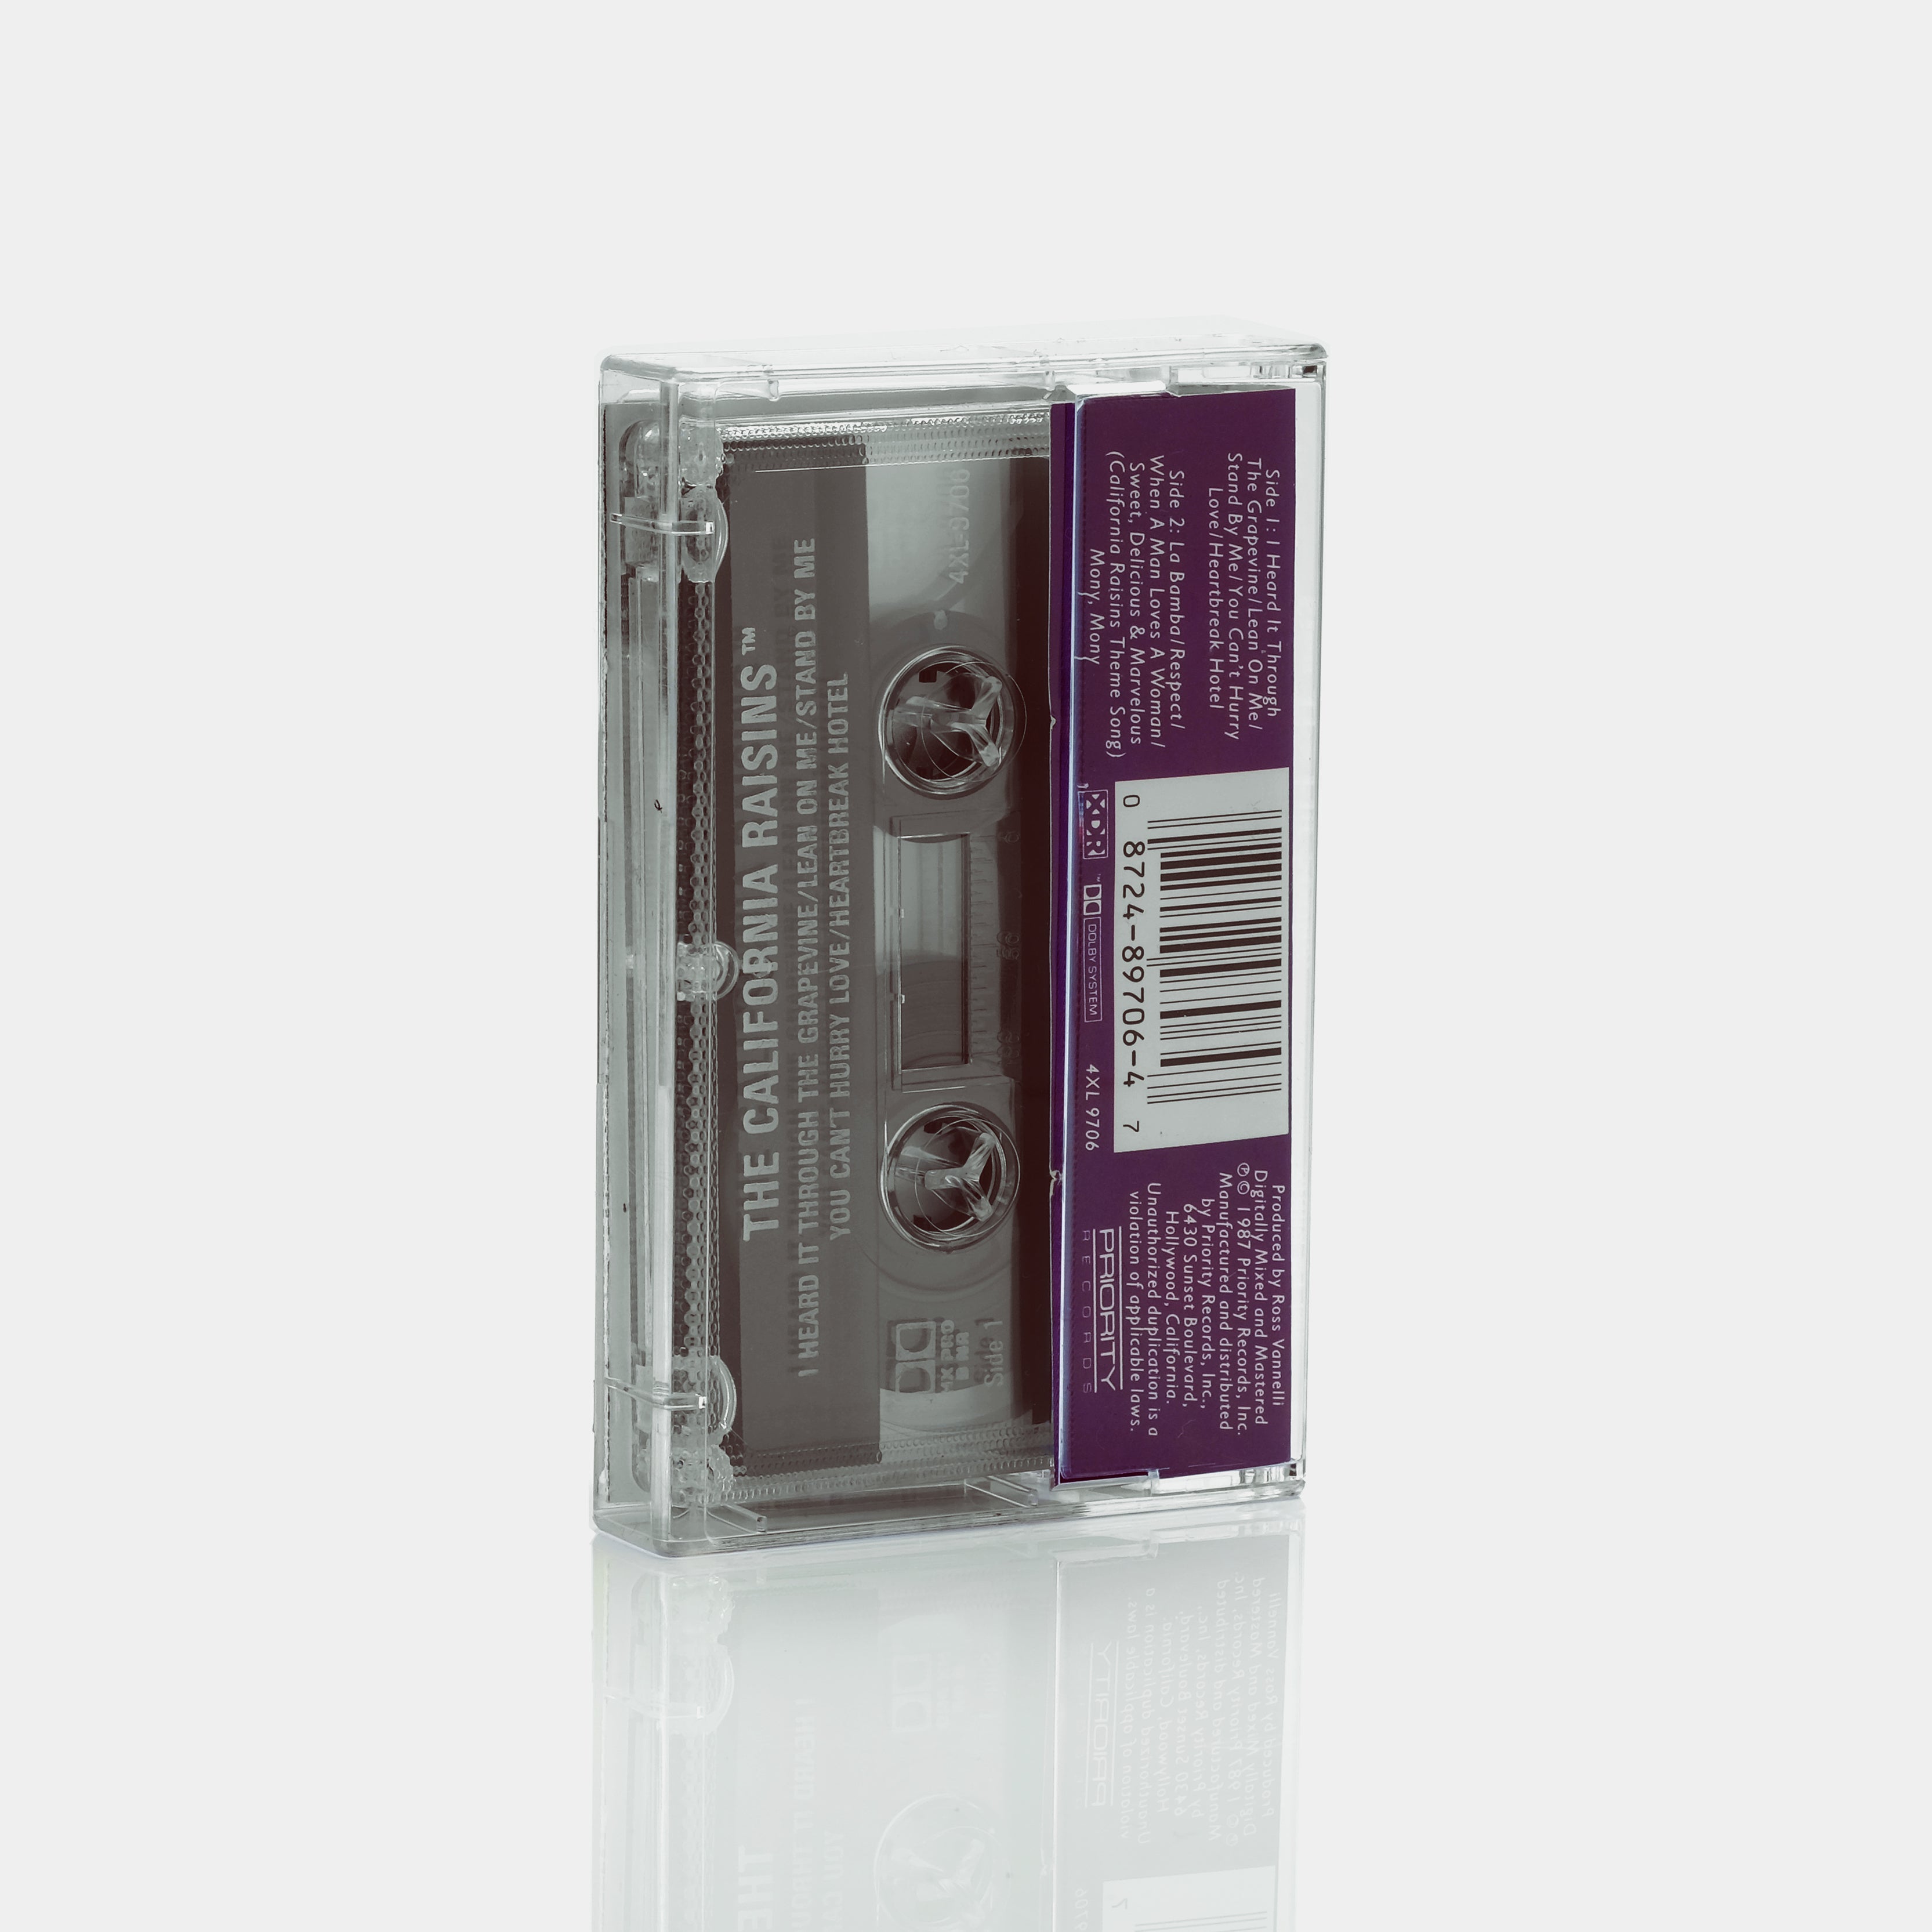 California Raisins - Sing The Hit Songs Cassette Tape